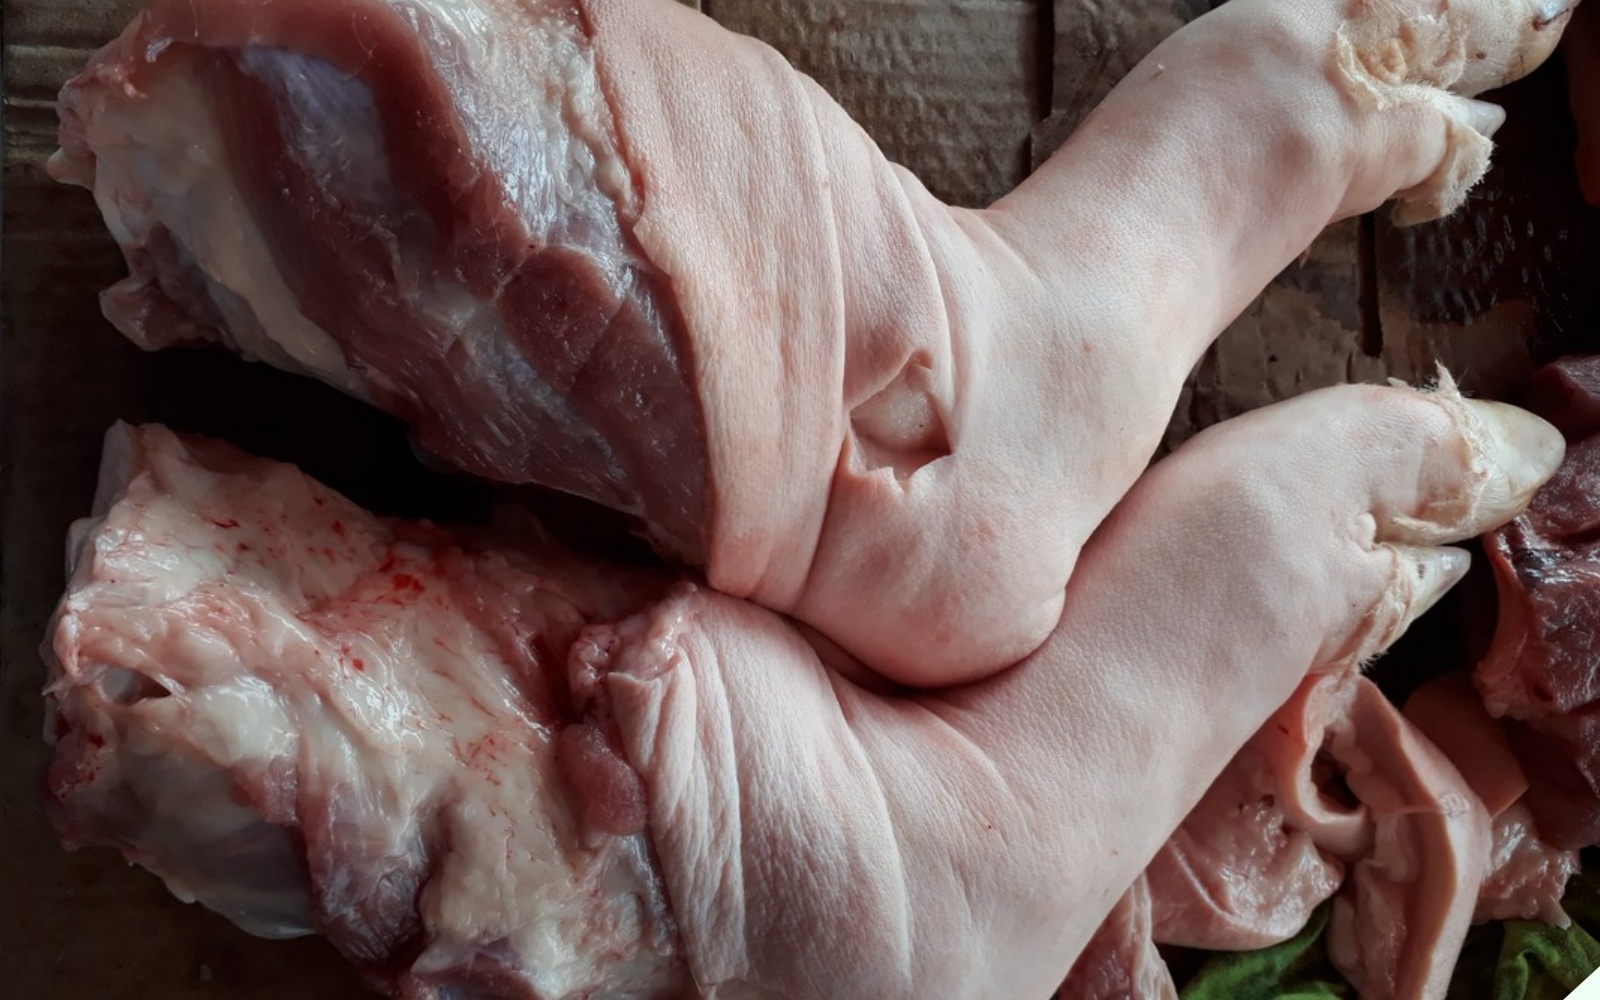 Khi mua thịt lợn cứ nhìn vào 3 điểm này là biết thịt “sạch” hay “bẩn”, nhớ kỹ để không bị thiệt - 6